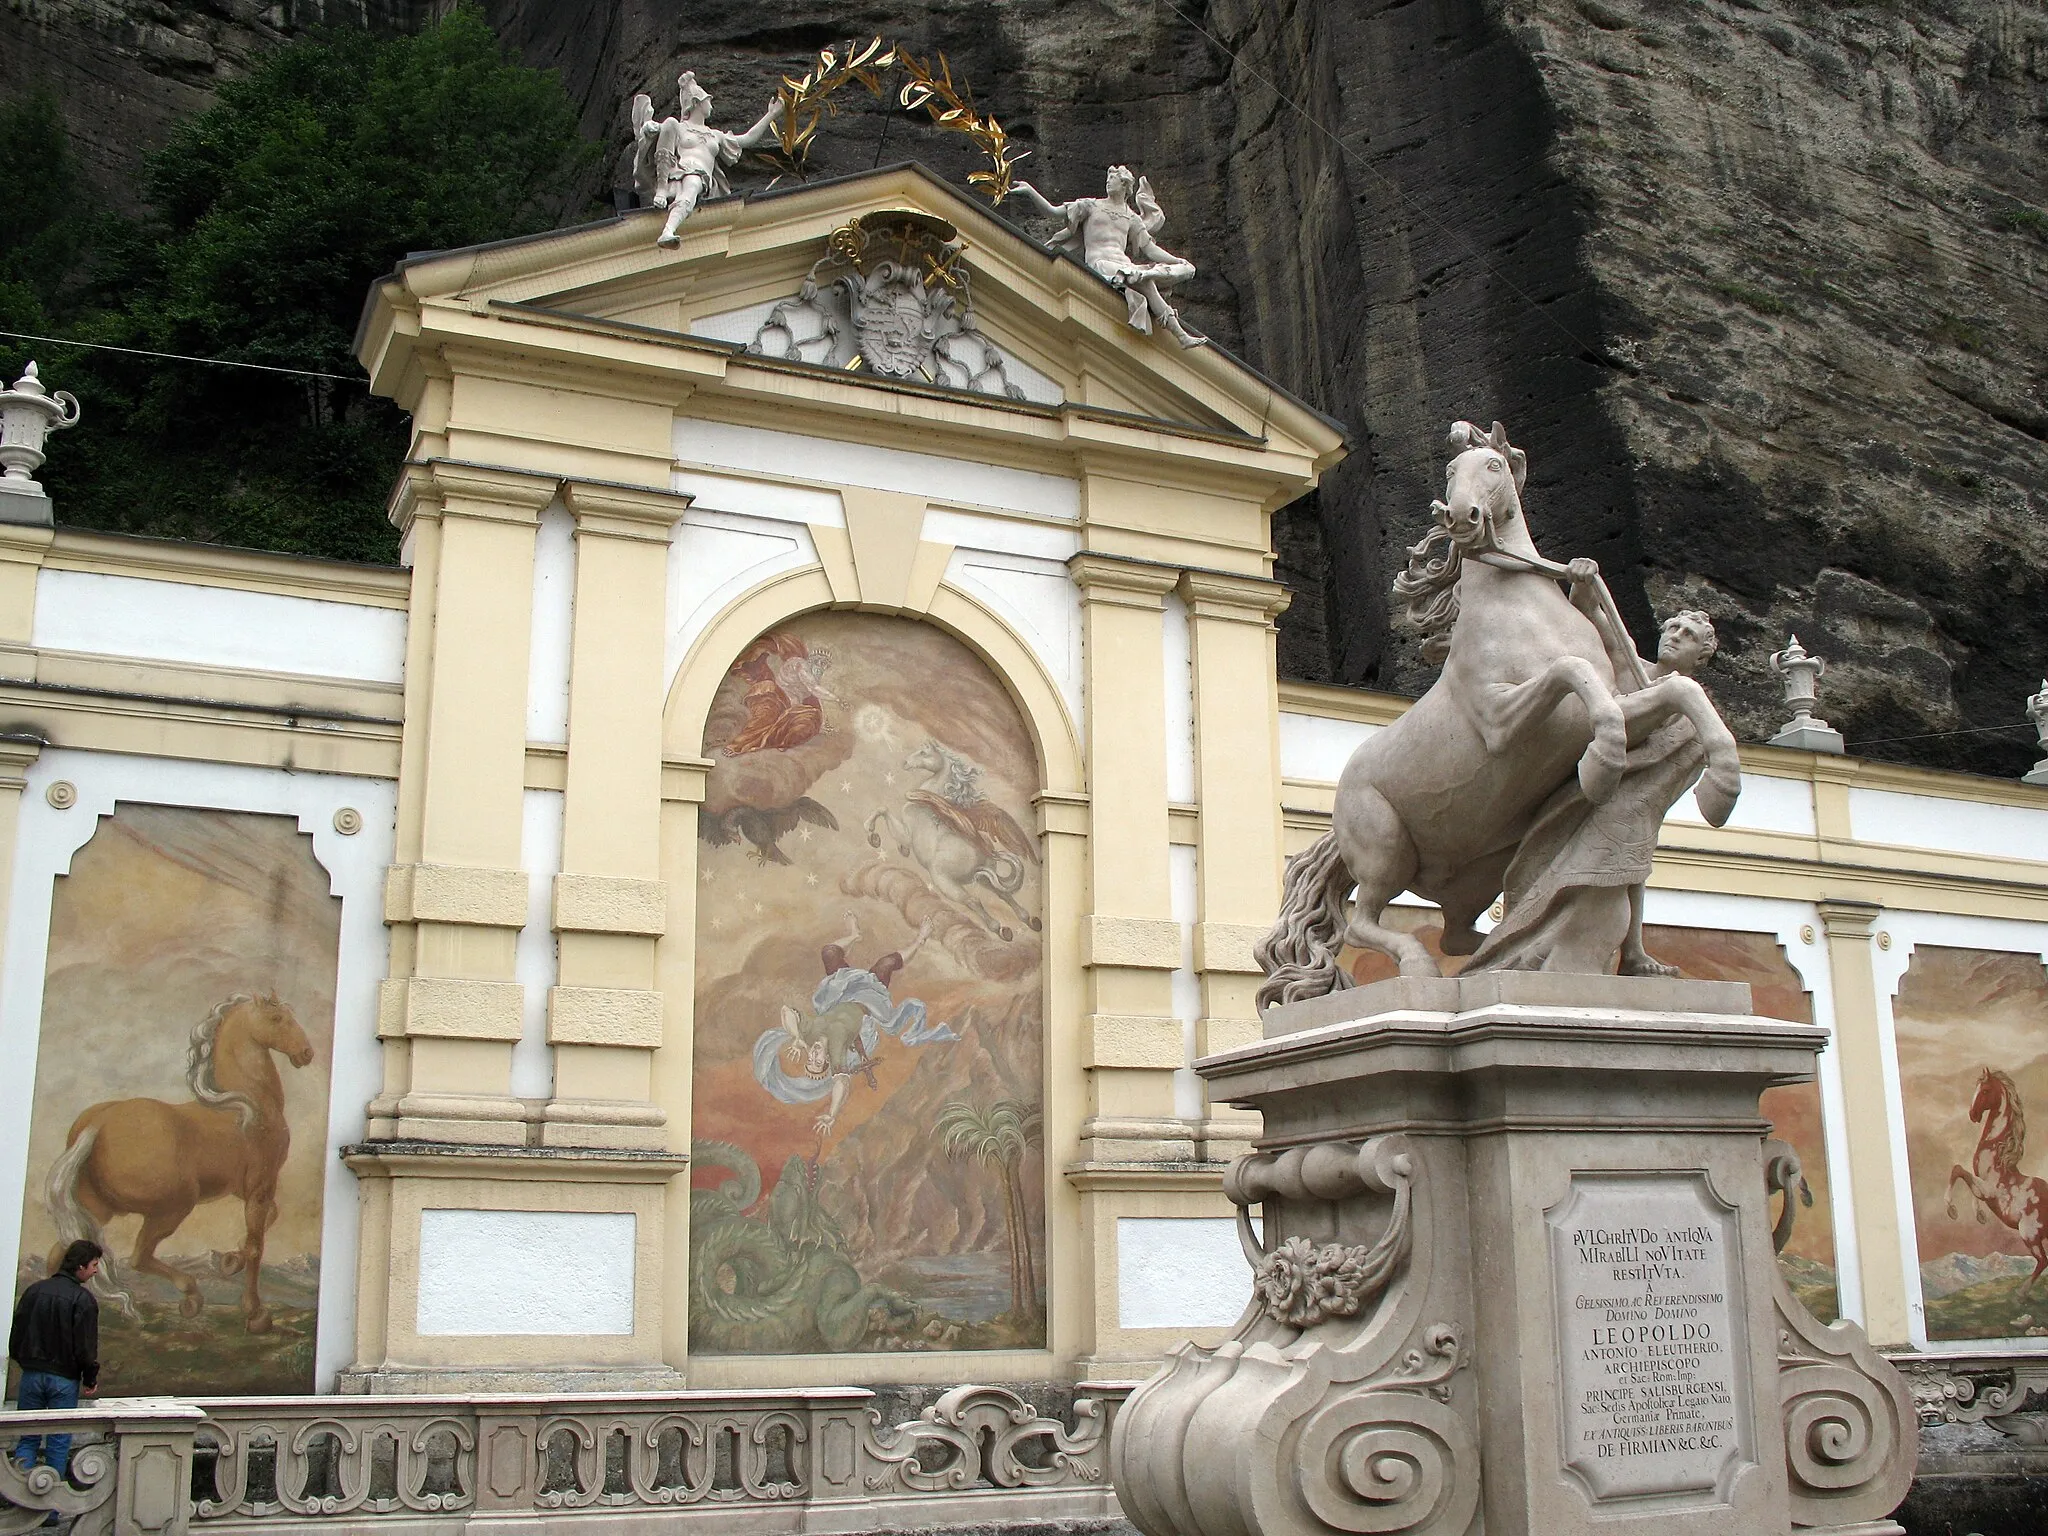 Imagen de Salzburgo